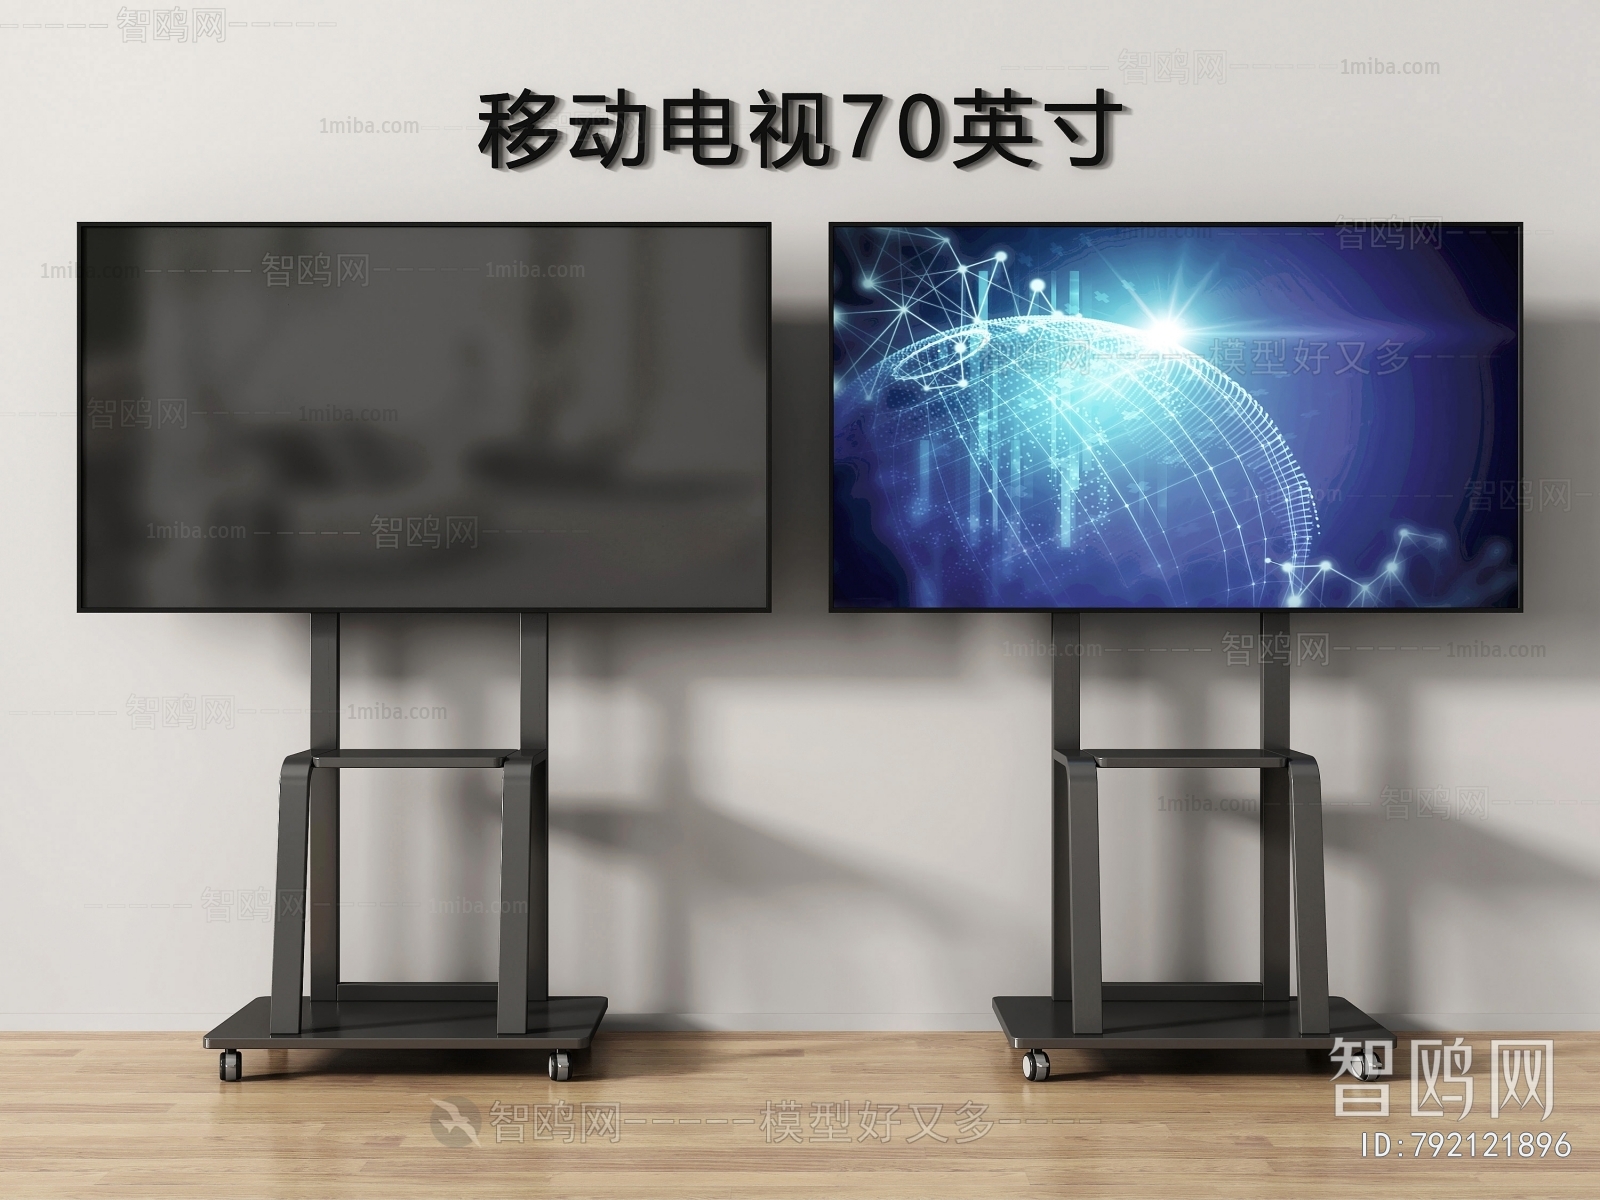 【2021 红点最佳设计奖】The New Rollable TV. GIRO / 可翻转电视 - 普象网